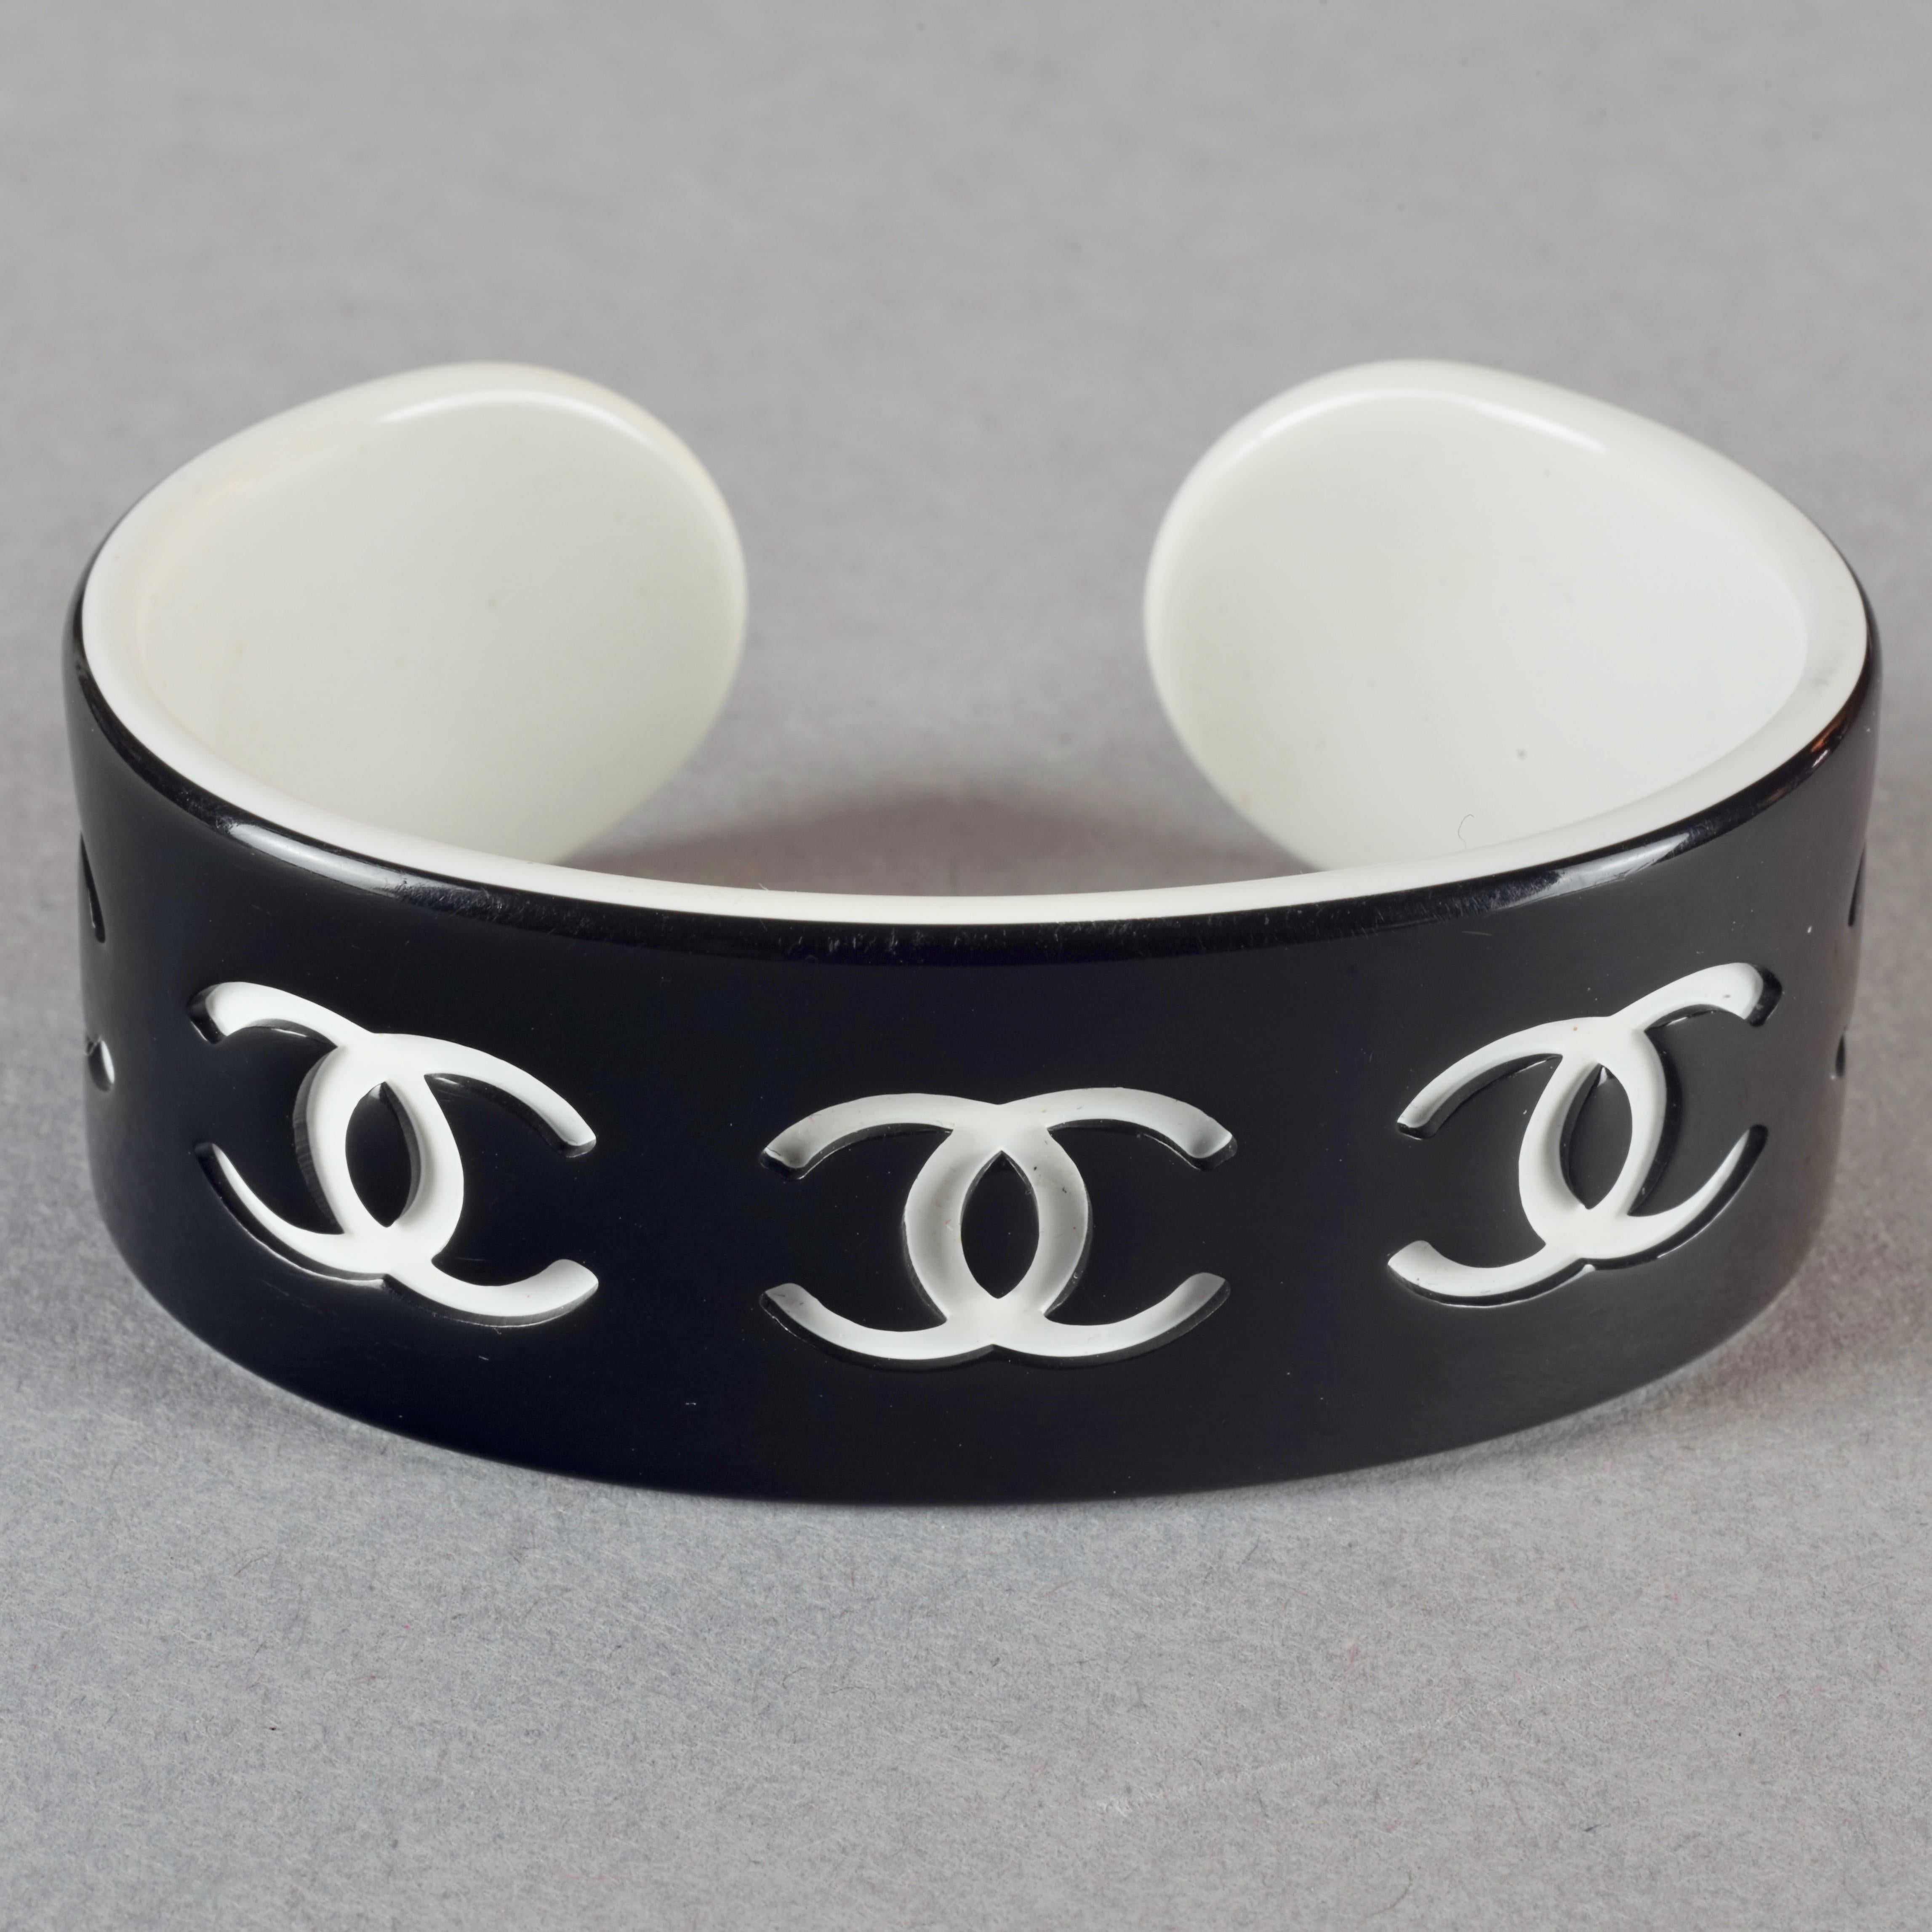 cc cuff bracelet